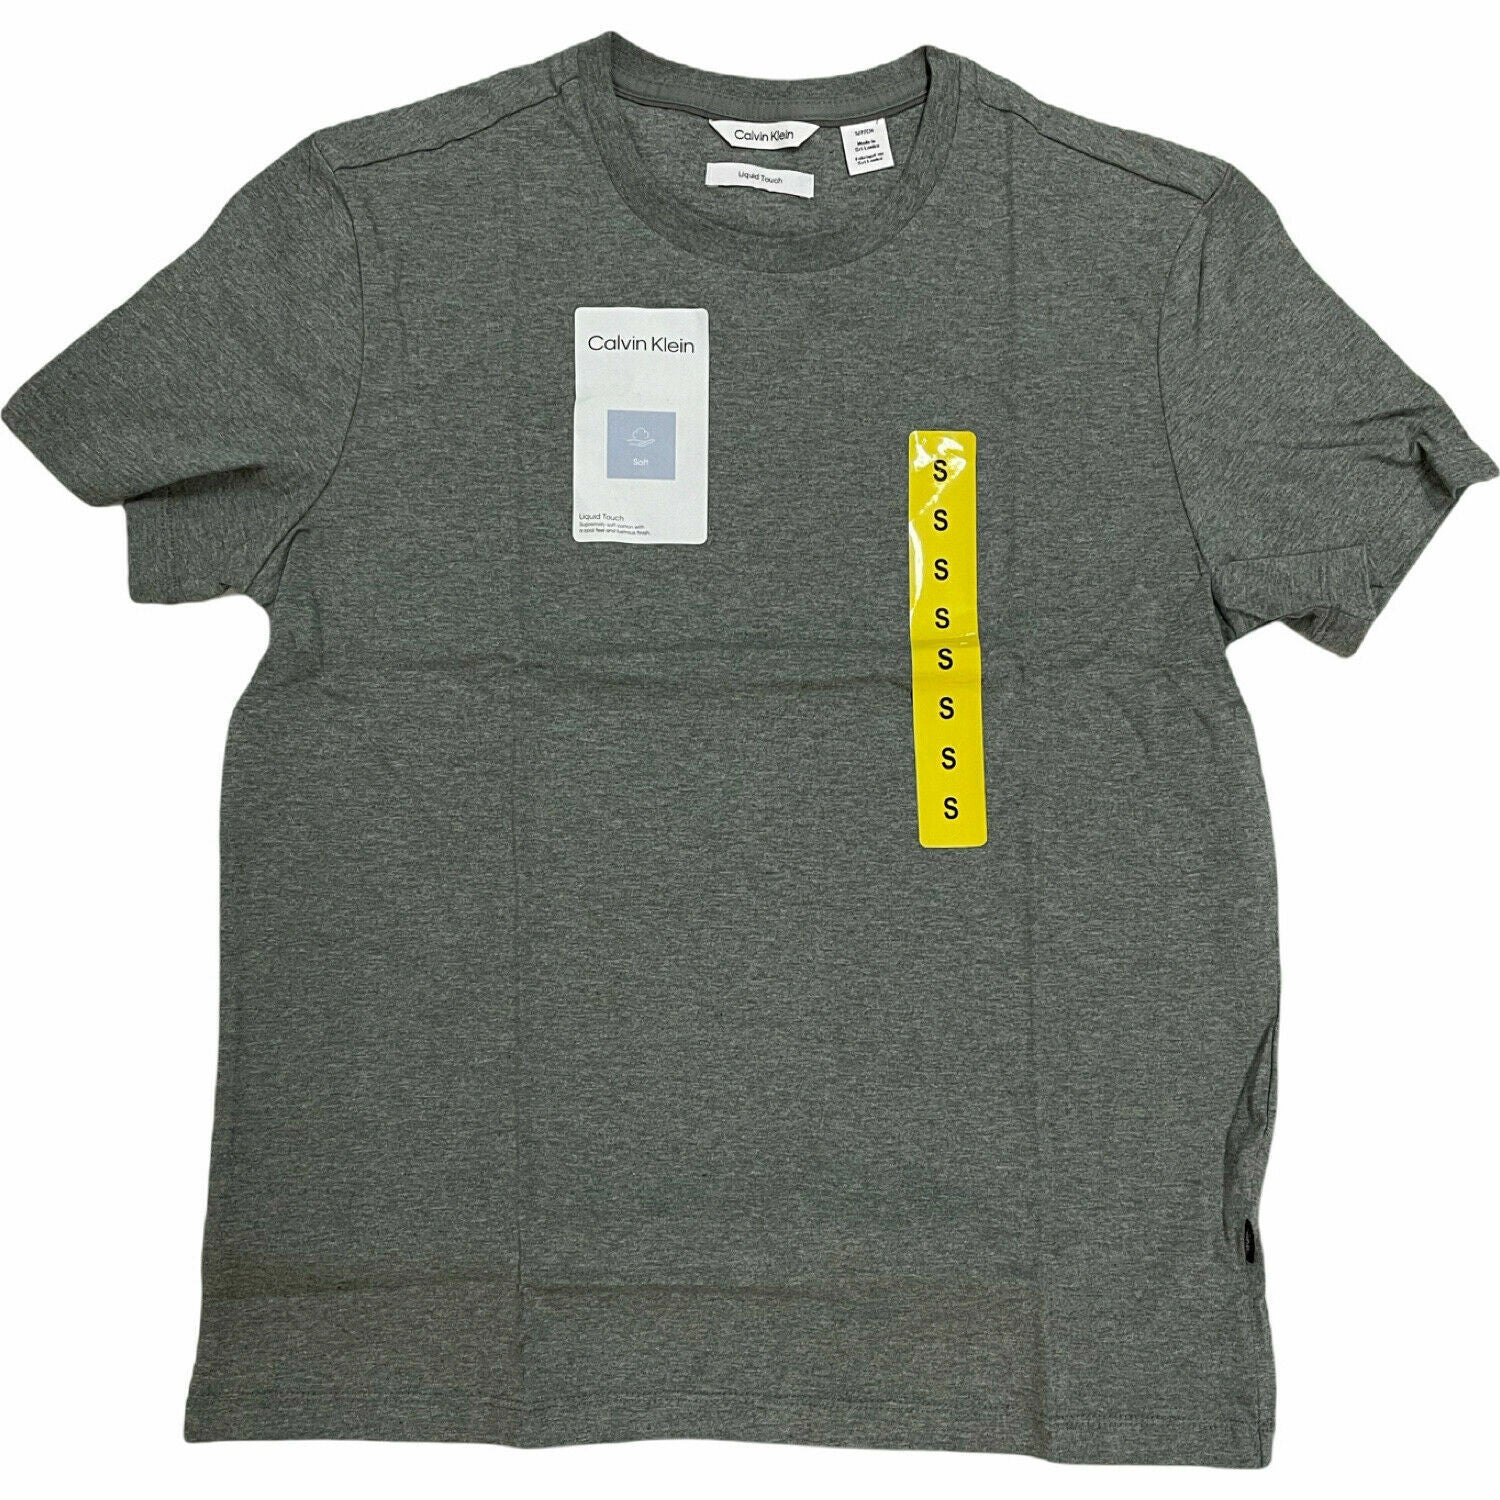 Calvin Klein Men's Short Sleeve Crew Neck Cotton T-Shirt (Dark Grey, Medium)